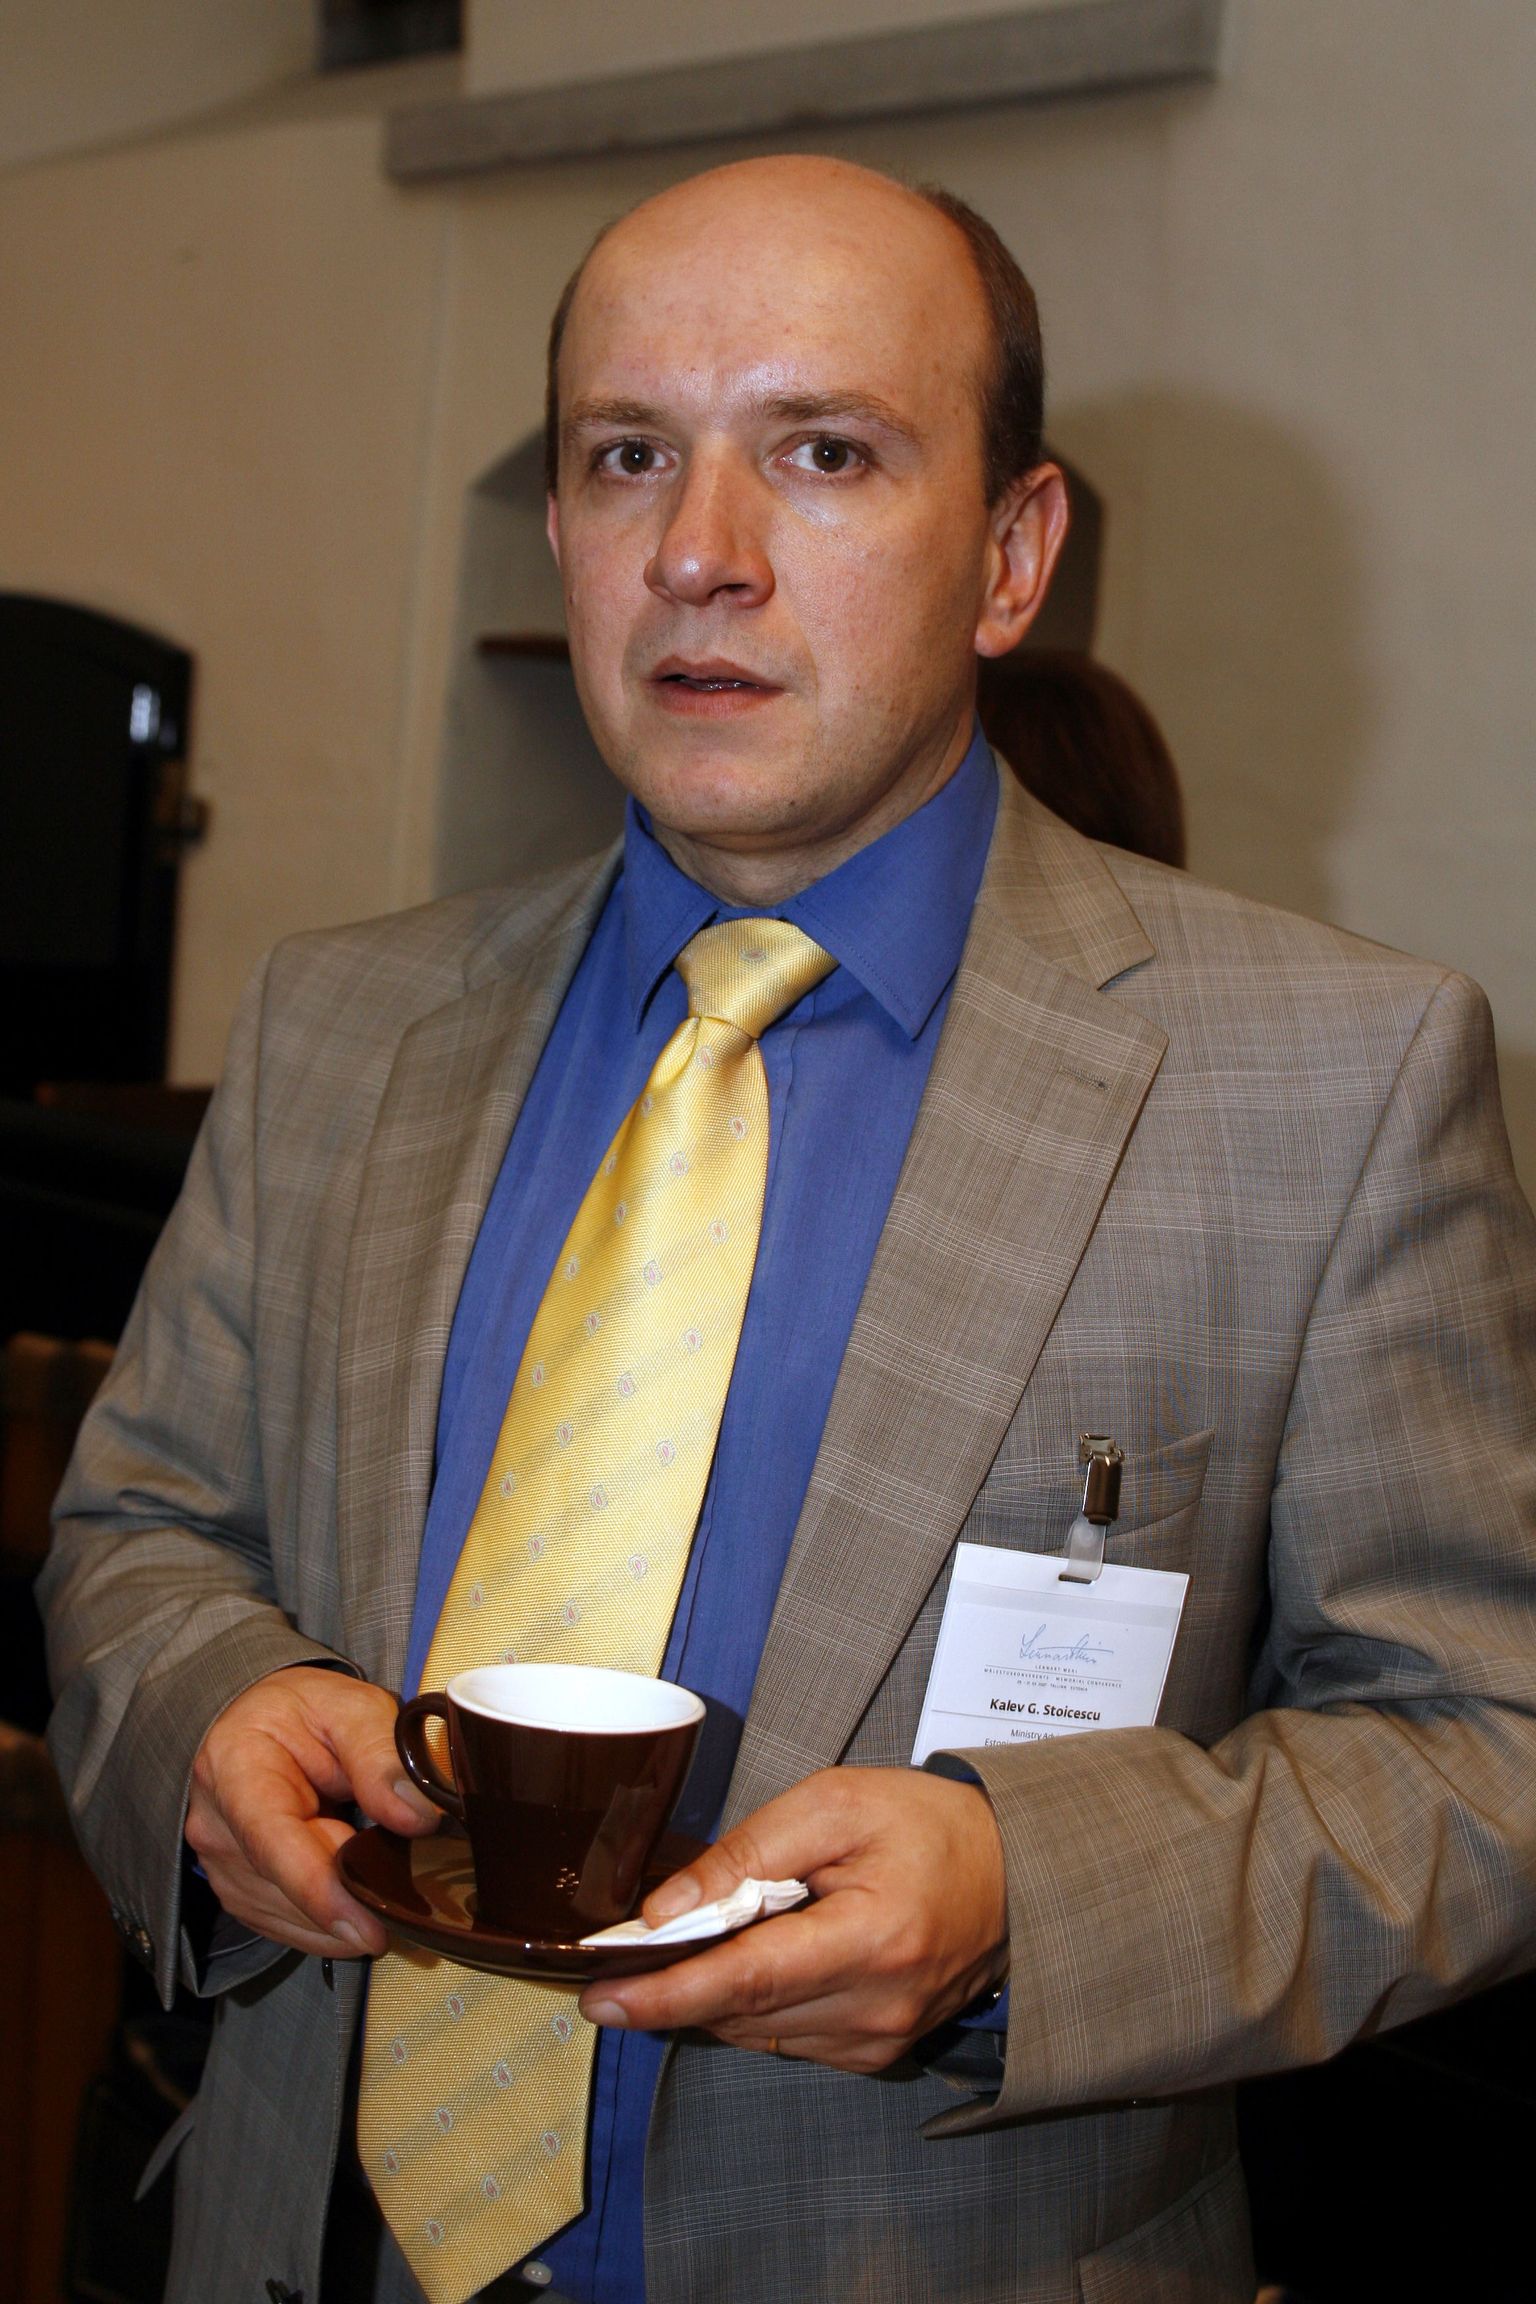 Rahvusvahelise kaitseuuringute keskuse teadur Kalev Stoicescu.